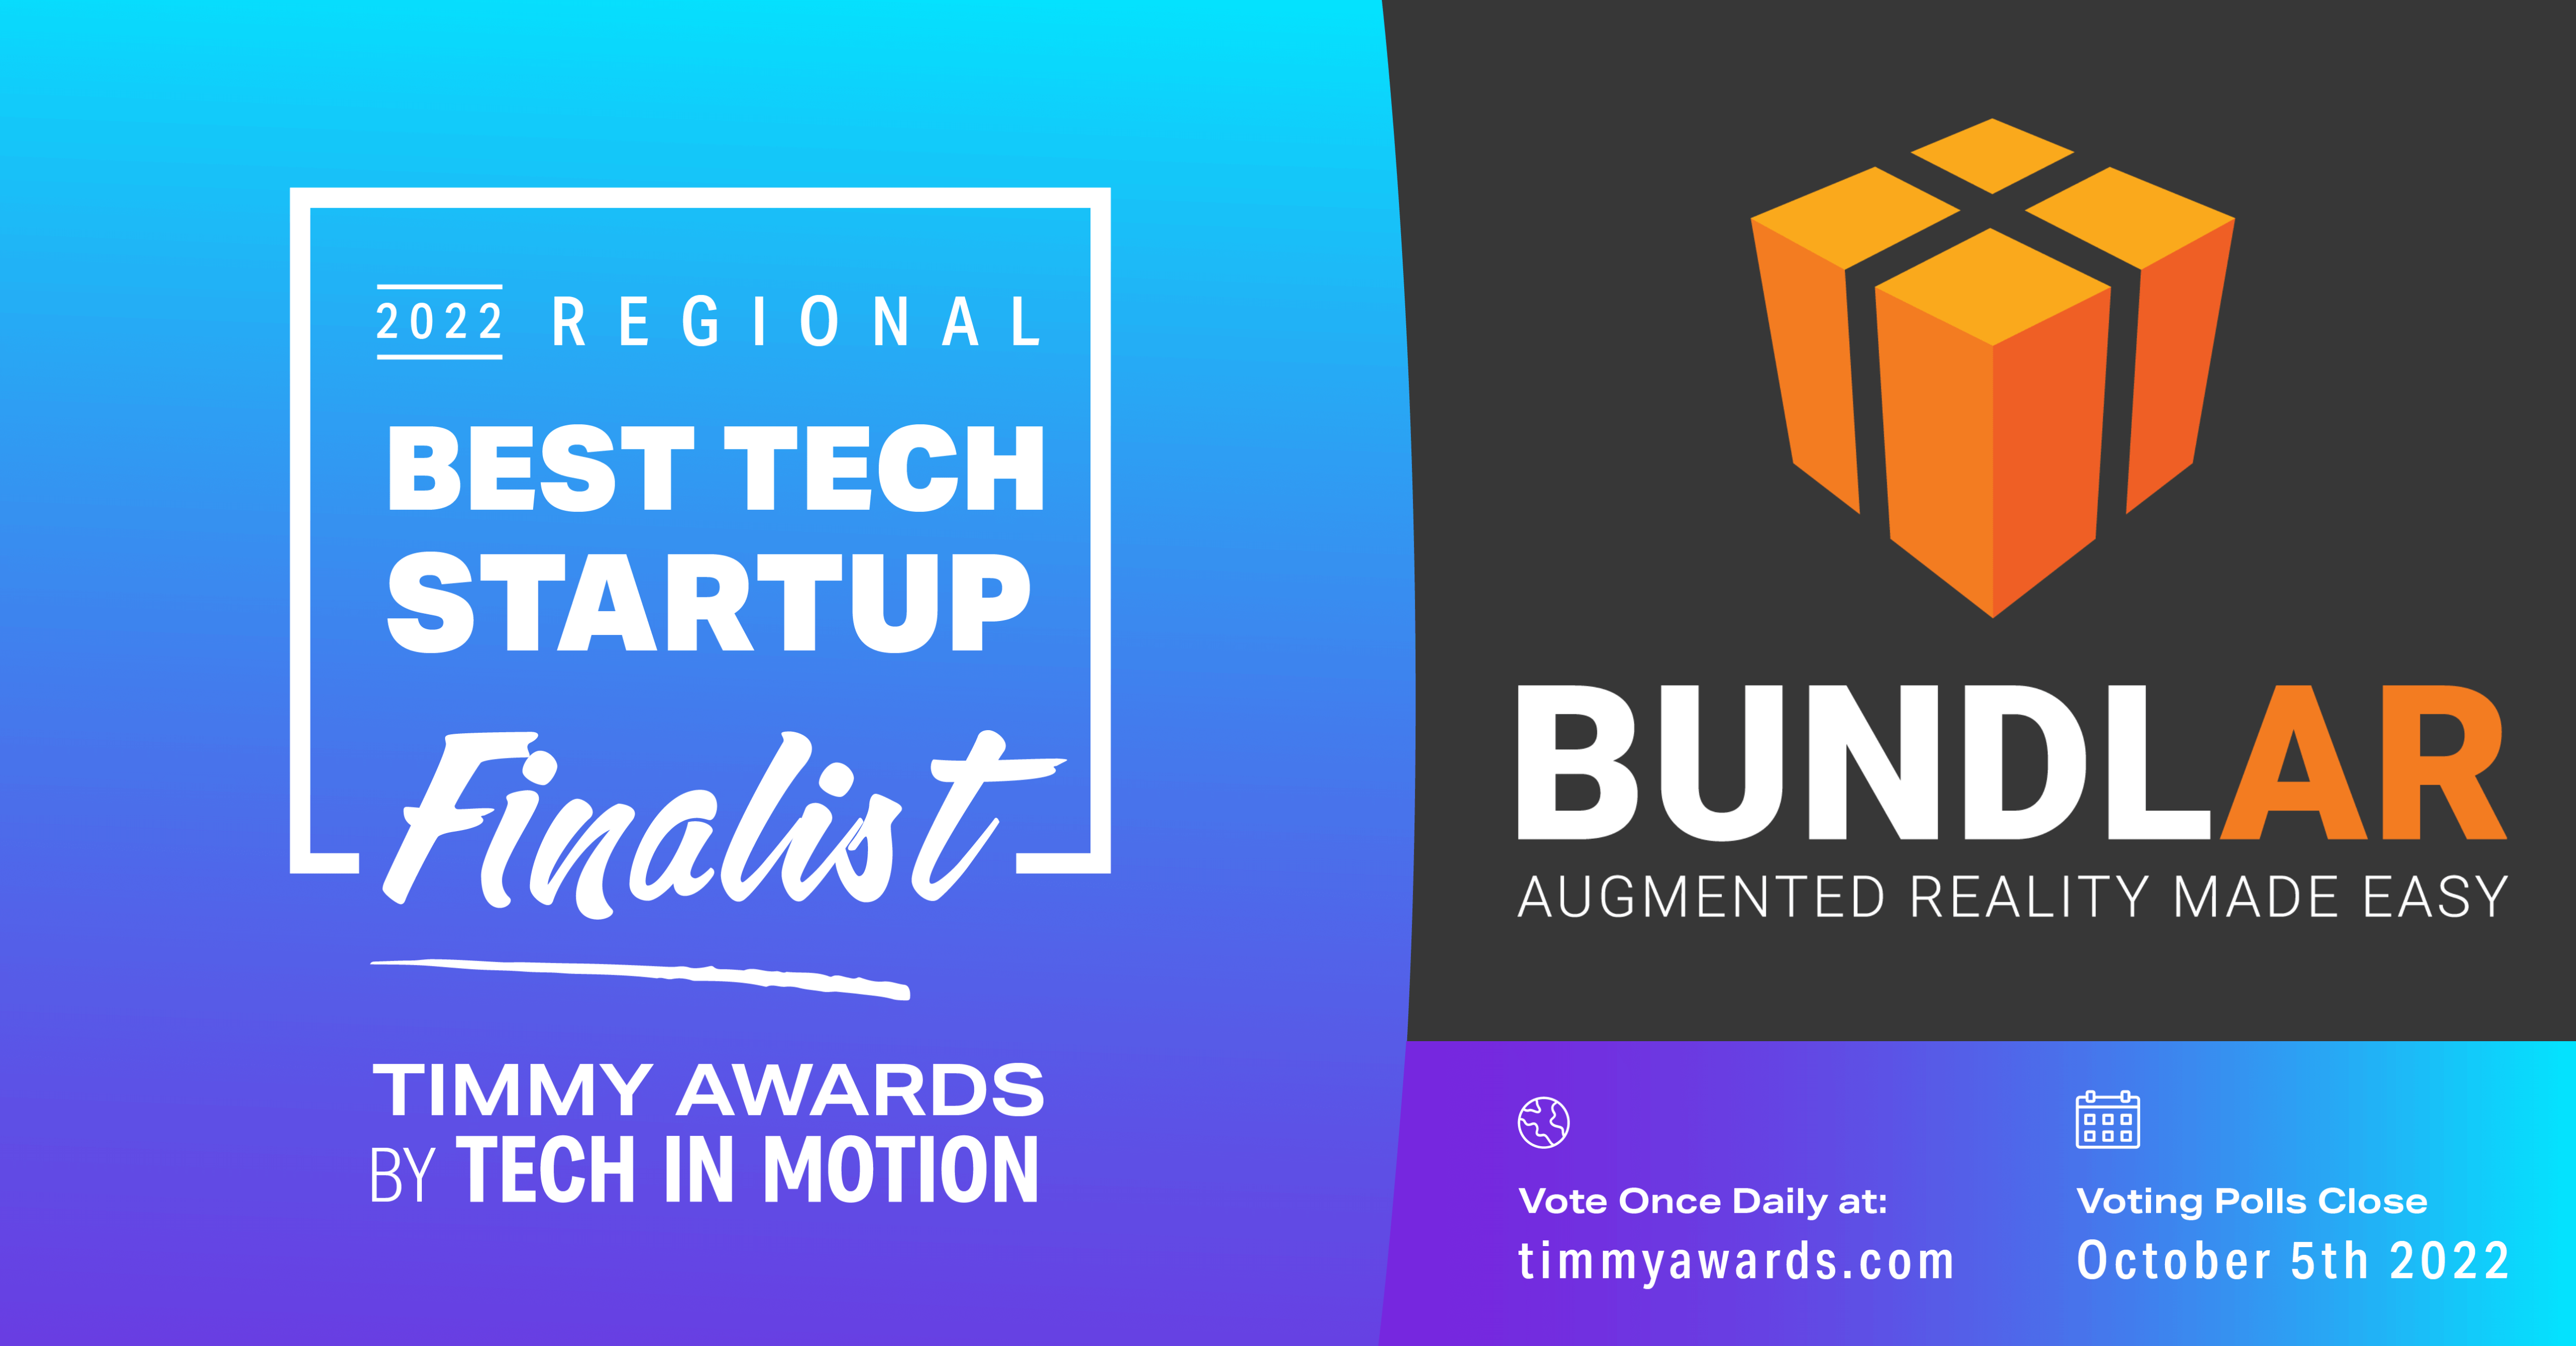 National Best Tech Startup Finalist badge